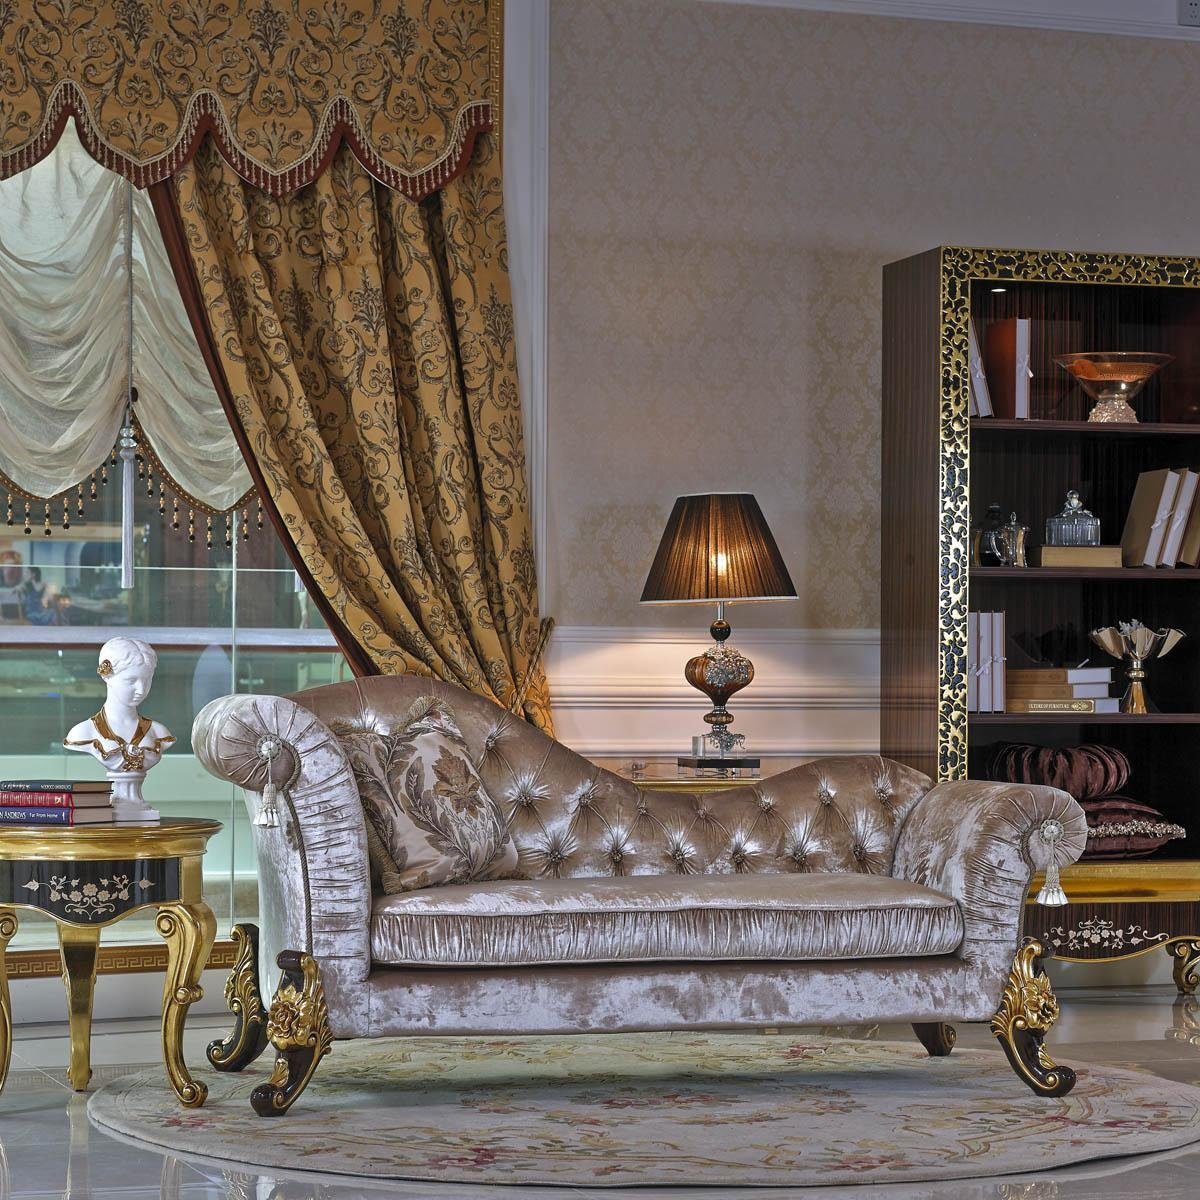 JVmoebel Chaiselongue, Chaiselounge Antik Stil Sofa Liege Textil Barock Rokoko Couch Liegen